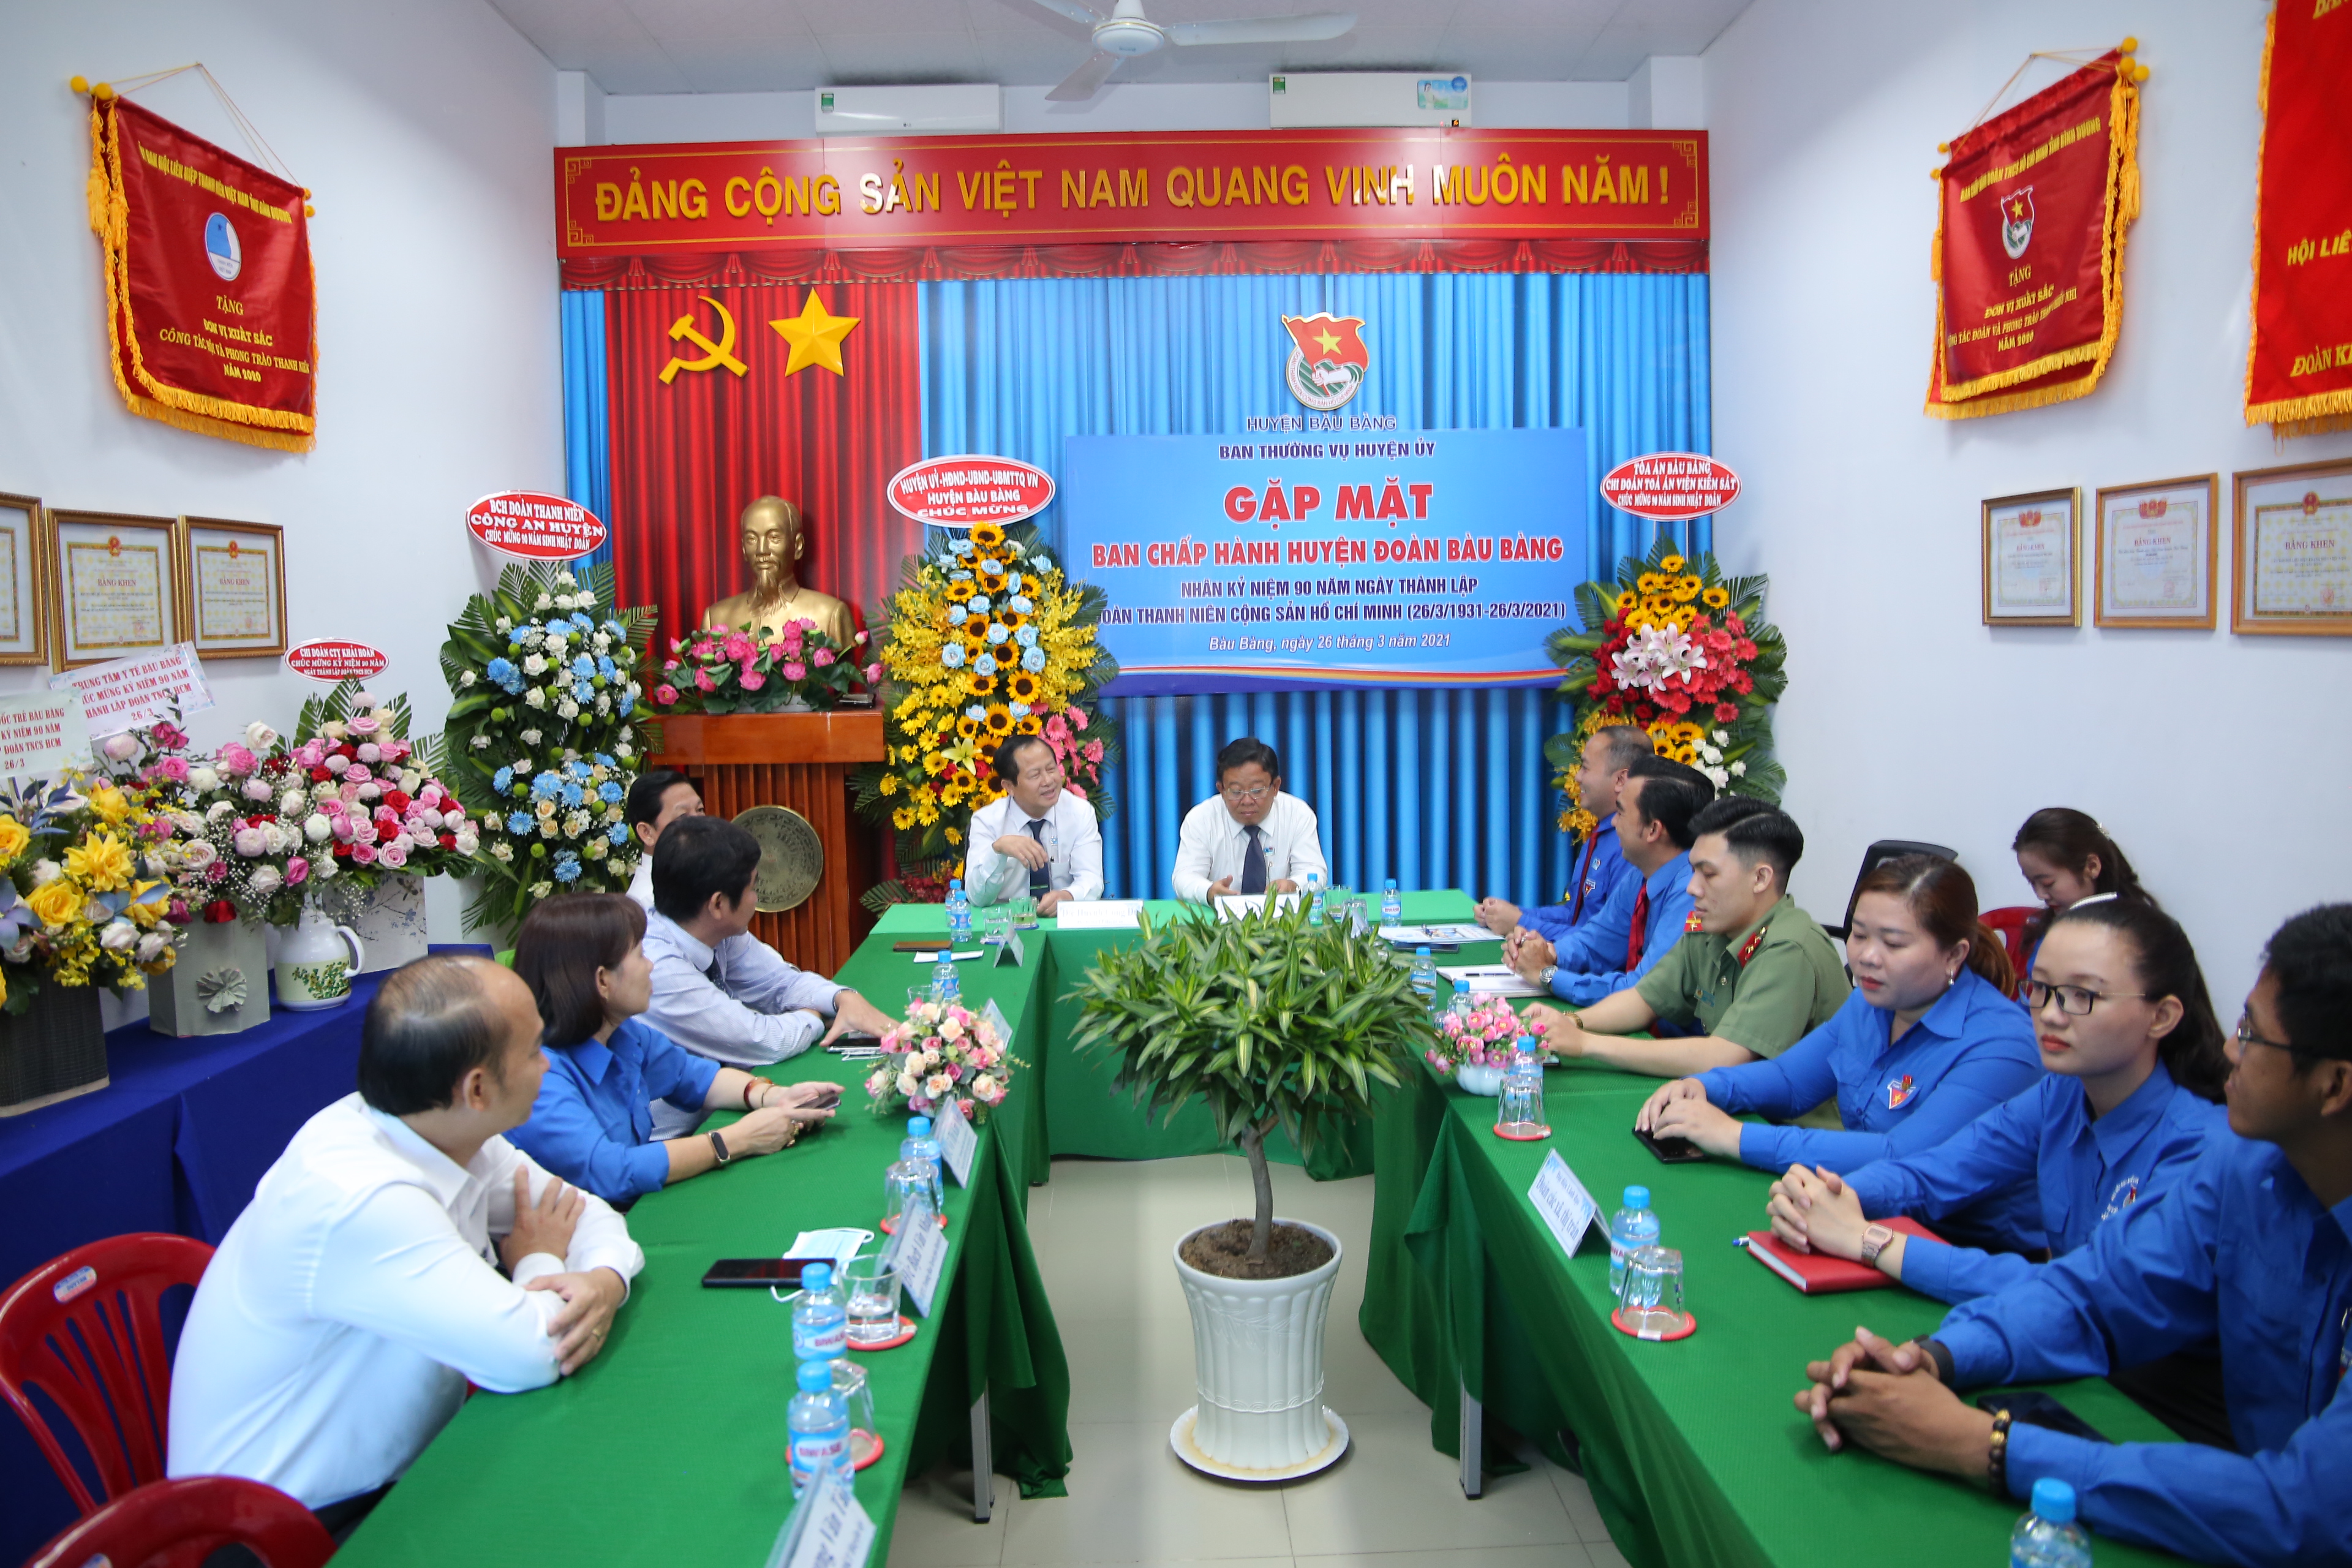 Ban Thường vụ Huyện ủy gặp mặt Ban Chấp hành Huyện đoàn nhân kỷ niệm 90 năm Ngày thành lập Đoàn TNCS Hồ Chí Minh